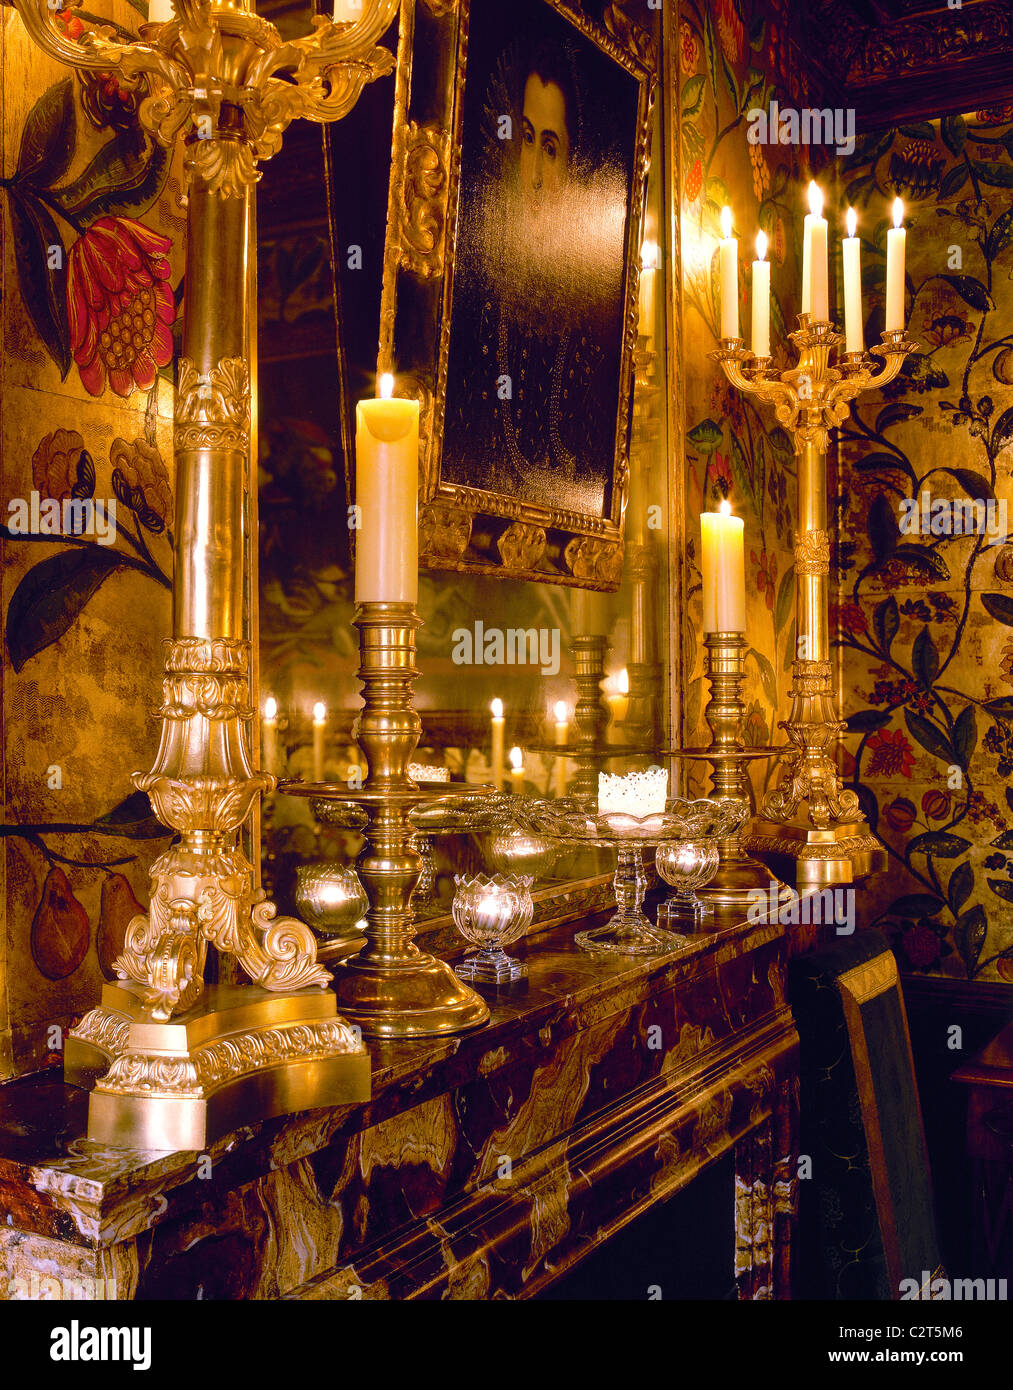 Cheminée en marbre, murs peints en vigueur, l'argent des chandeliers, bougies allumées, Banque D'Images